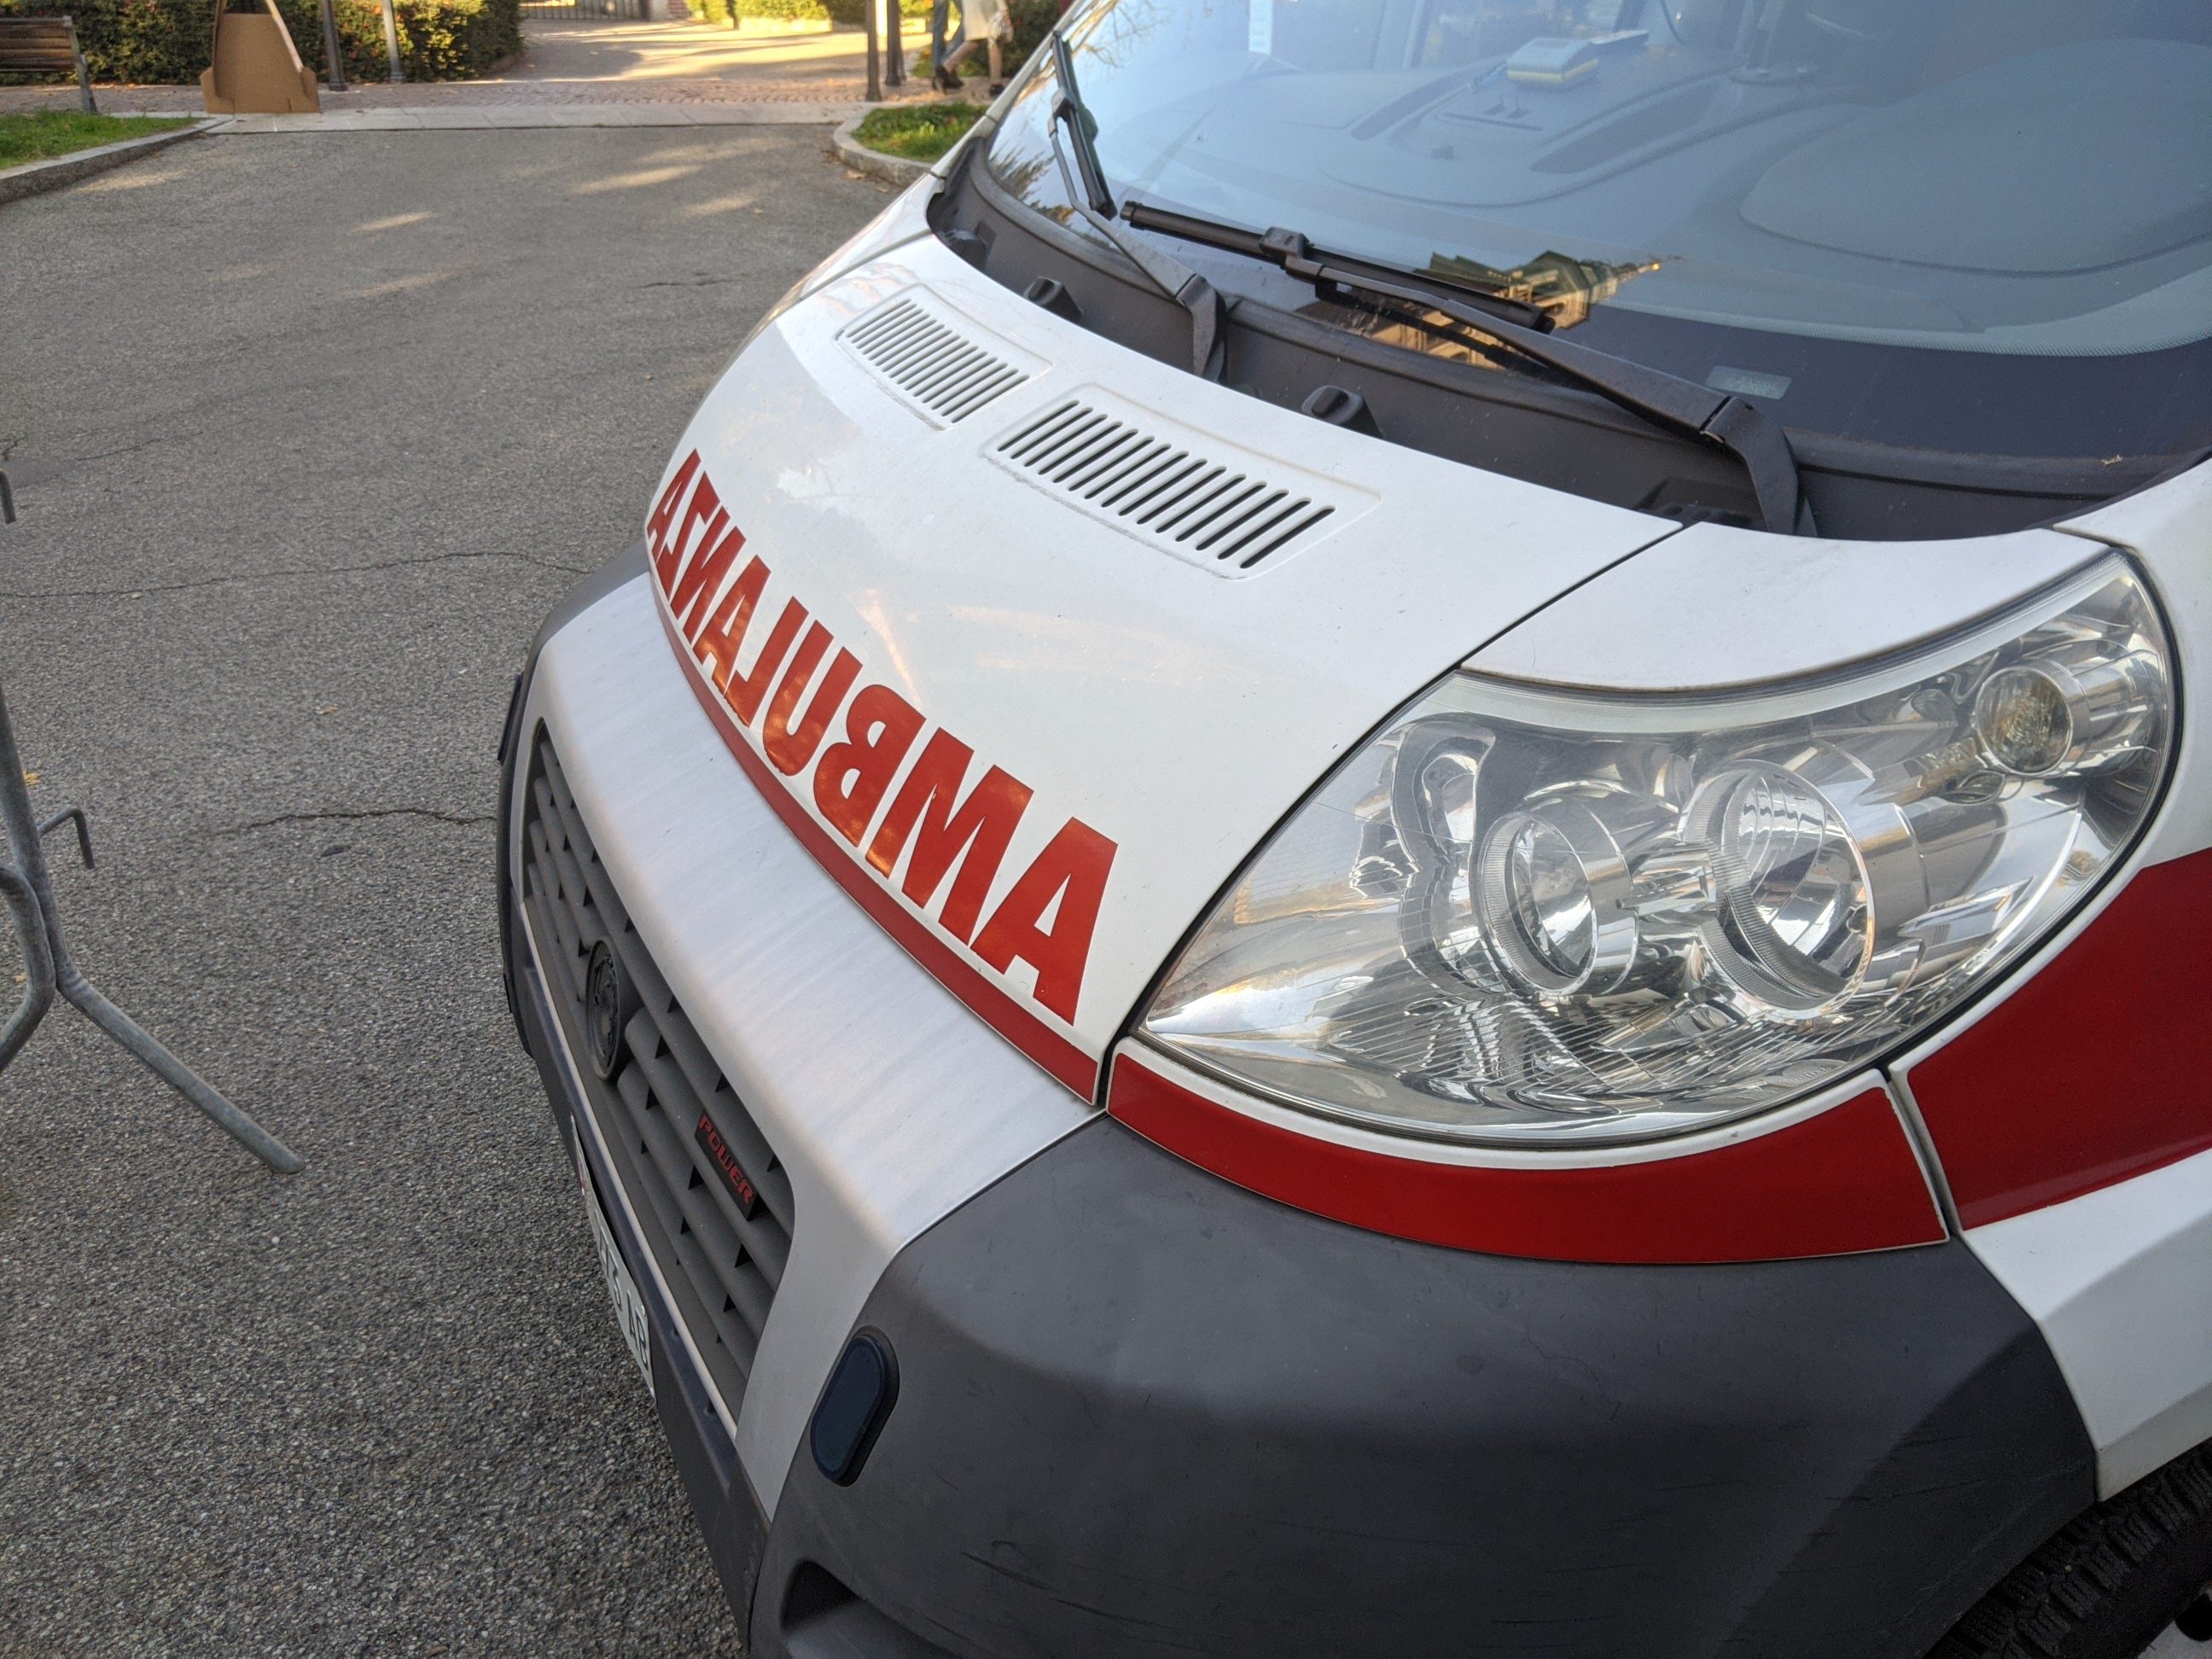 Motociclista saronnese in codice giallo all’ospedale: dopo incidente auto/moto in provincia di Lecco